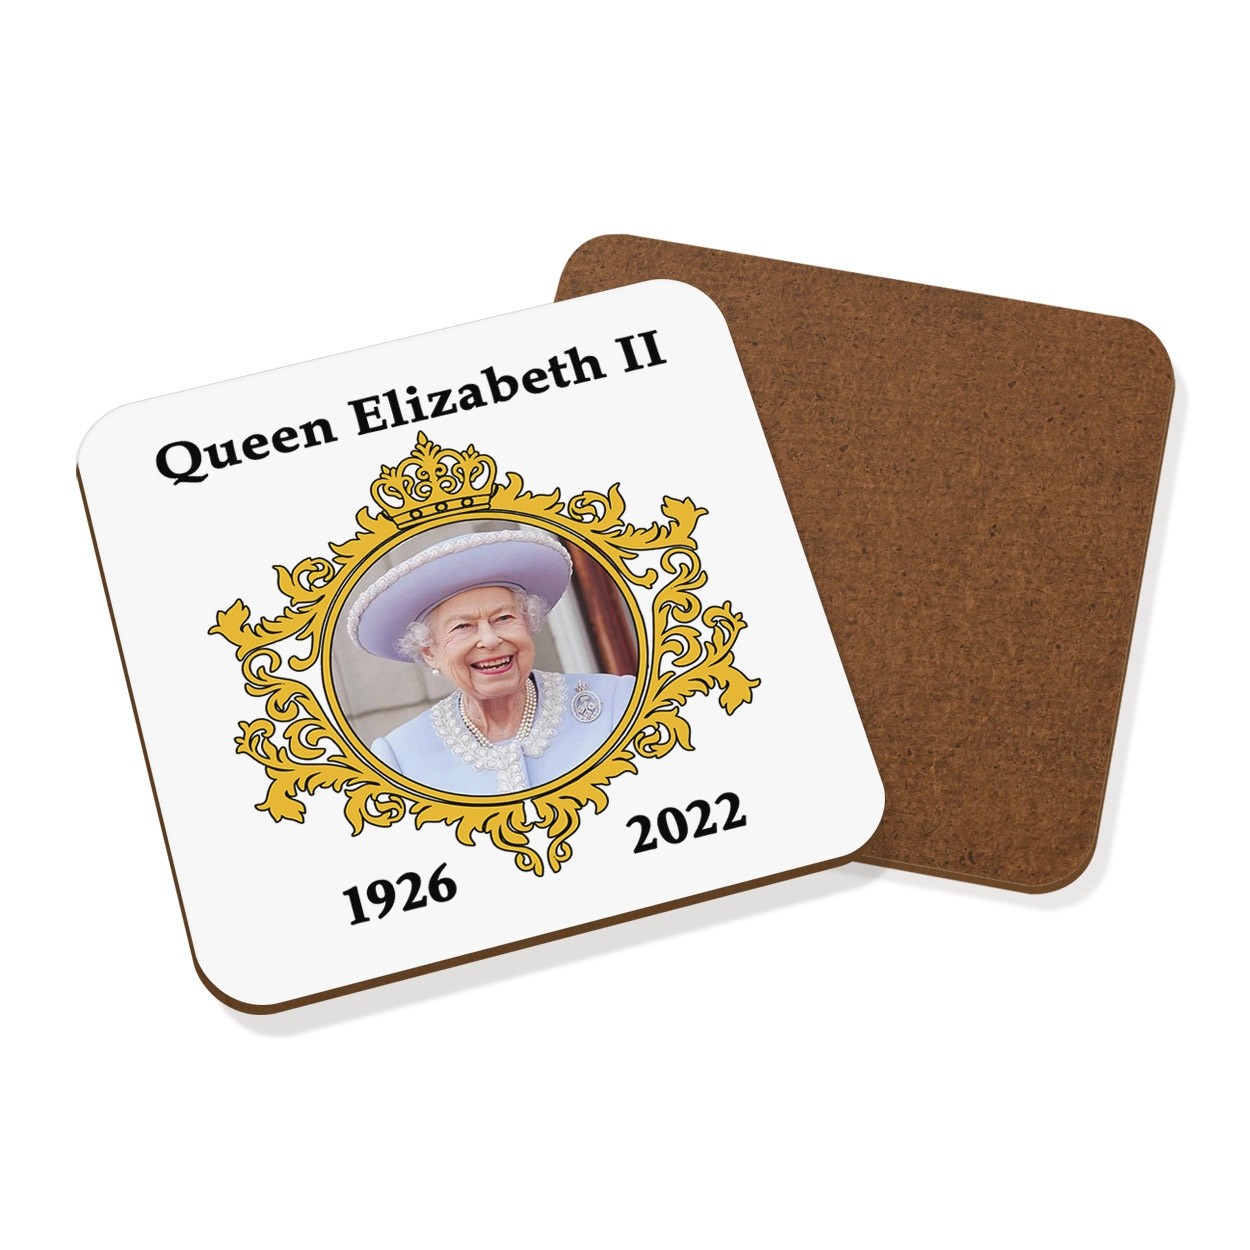 Queen Elizabeth II 1926 - 2022 Coaster Drinks Mat Commemorative Gift Her Majesty